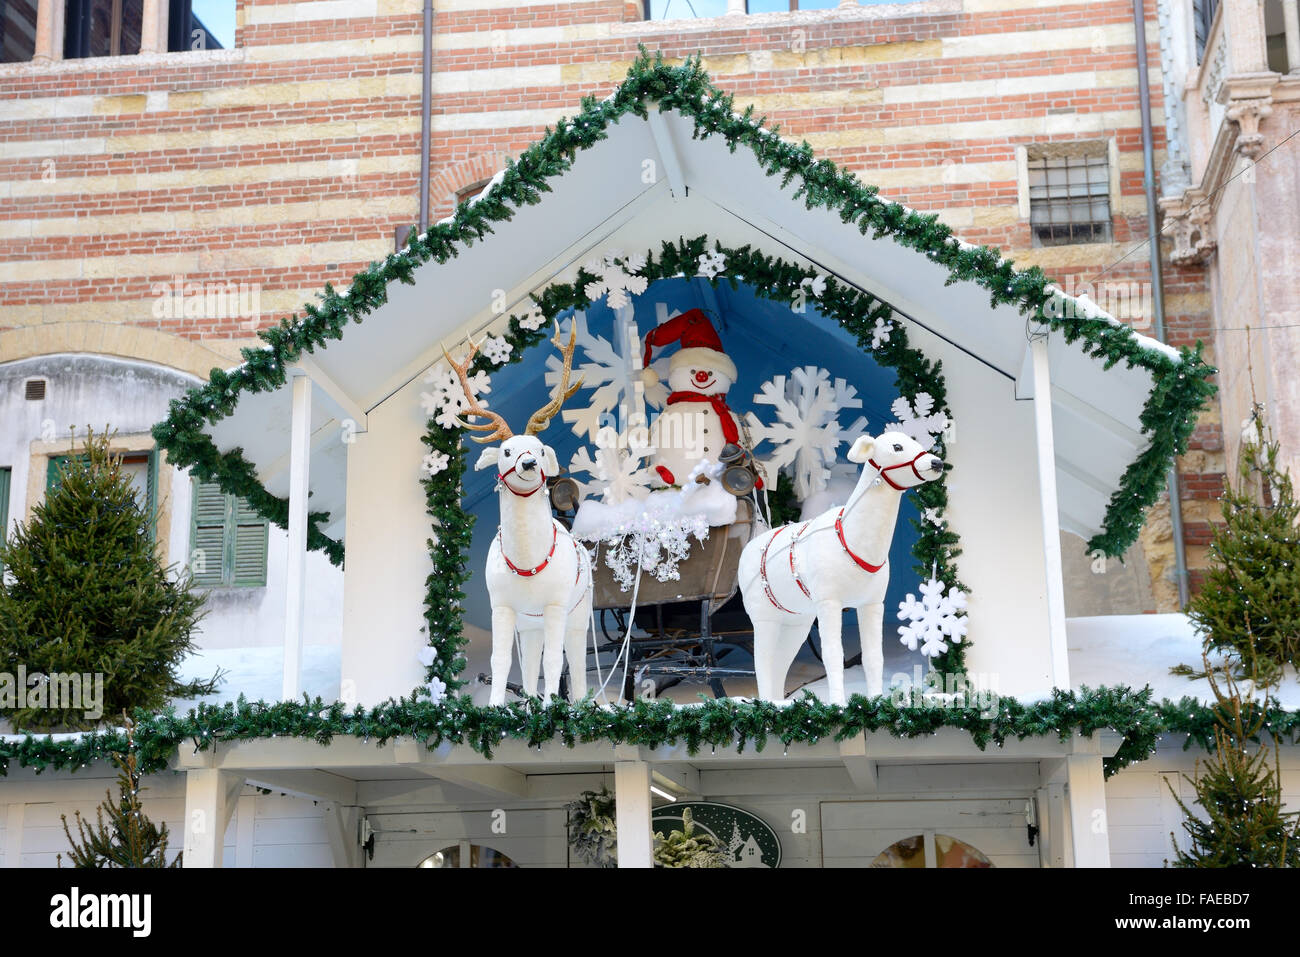 The Christmas decoration in Verona city, Italy Stock Photo